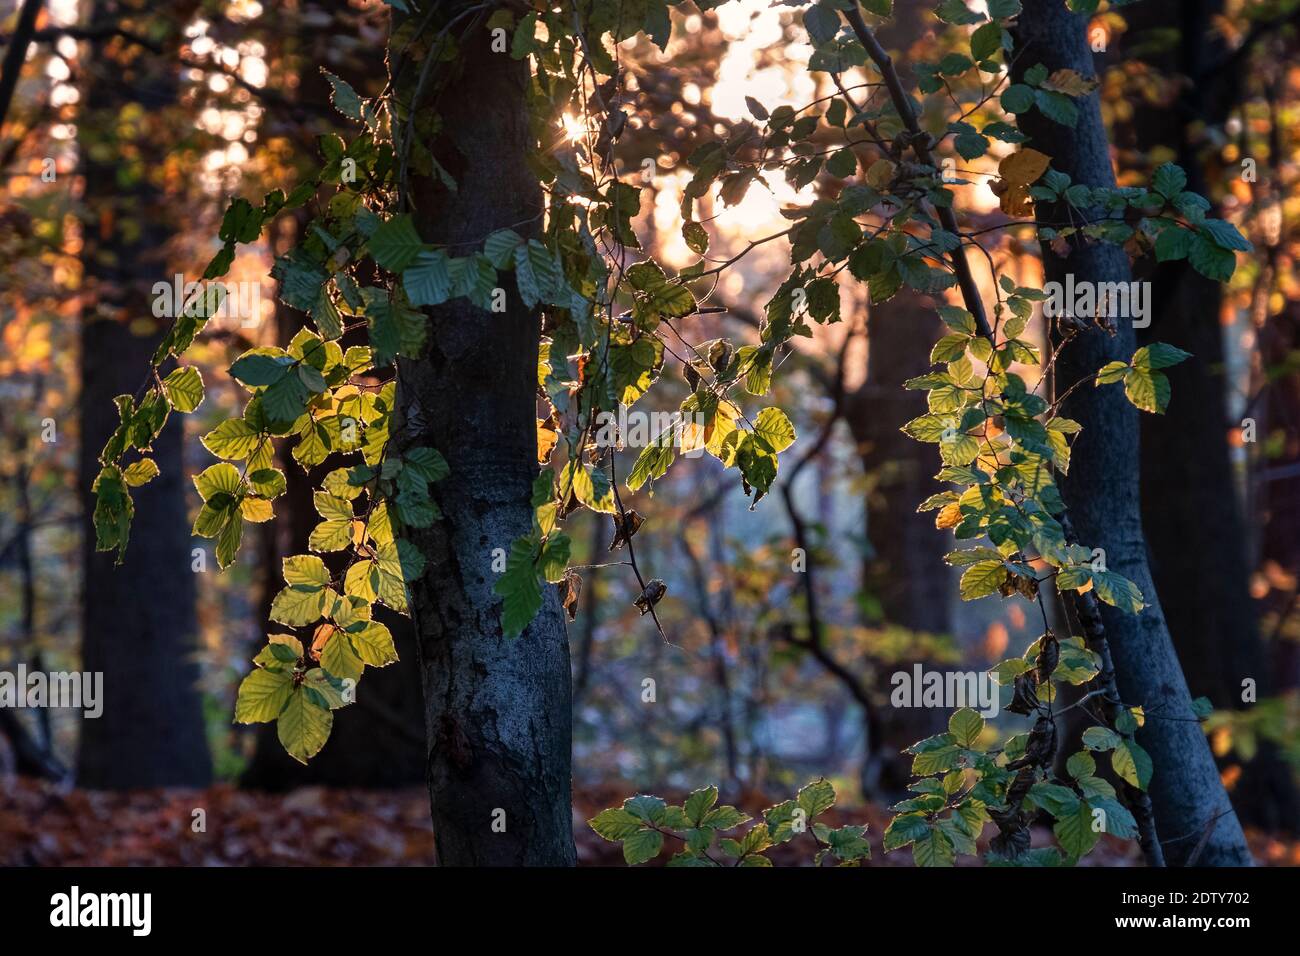 La belleza de los árboles, árboles de haya retroiluminados en el bosque de Delamere, Cheshire, Inglaterra, Reino Unido Foto de stock